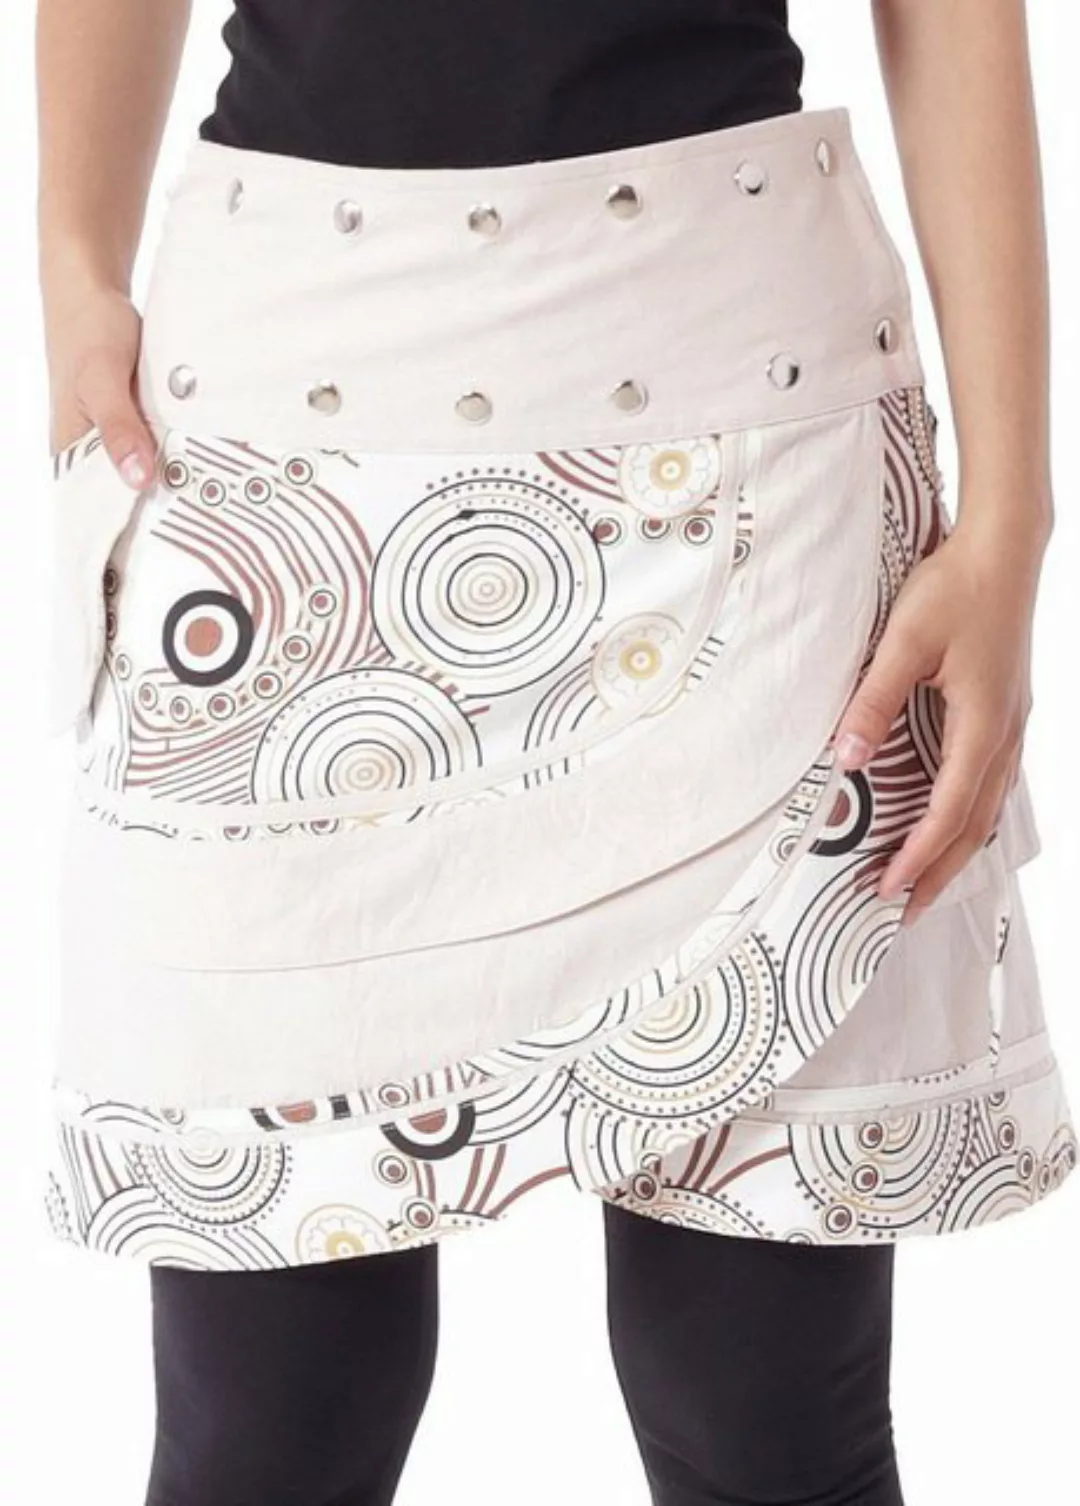 PUREWONDER Wickelrock Damen Rock mit Tasche und Schnürung sk181 Baumwolle E günstig online kaufen